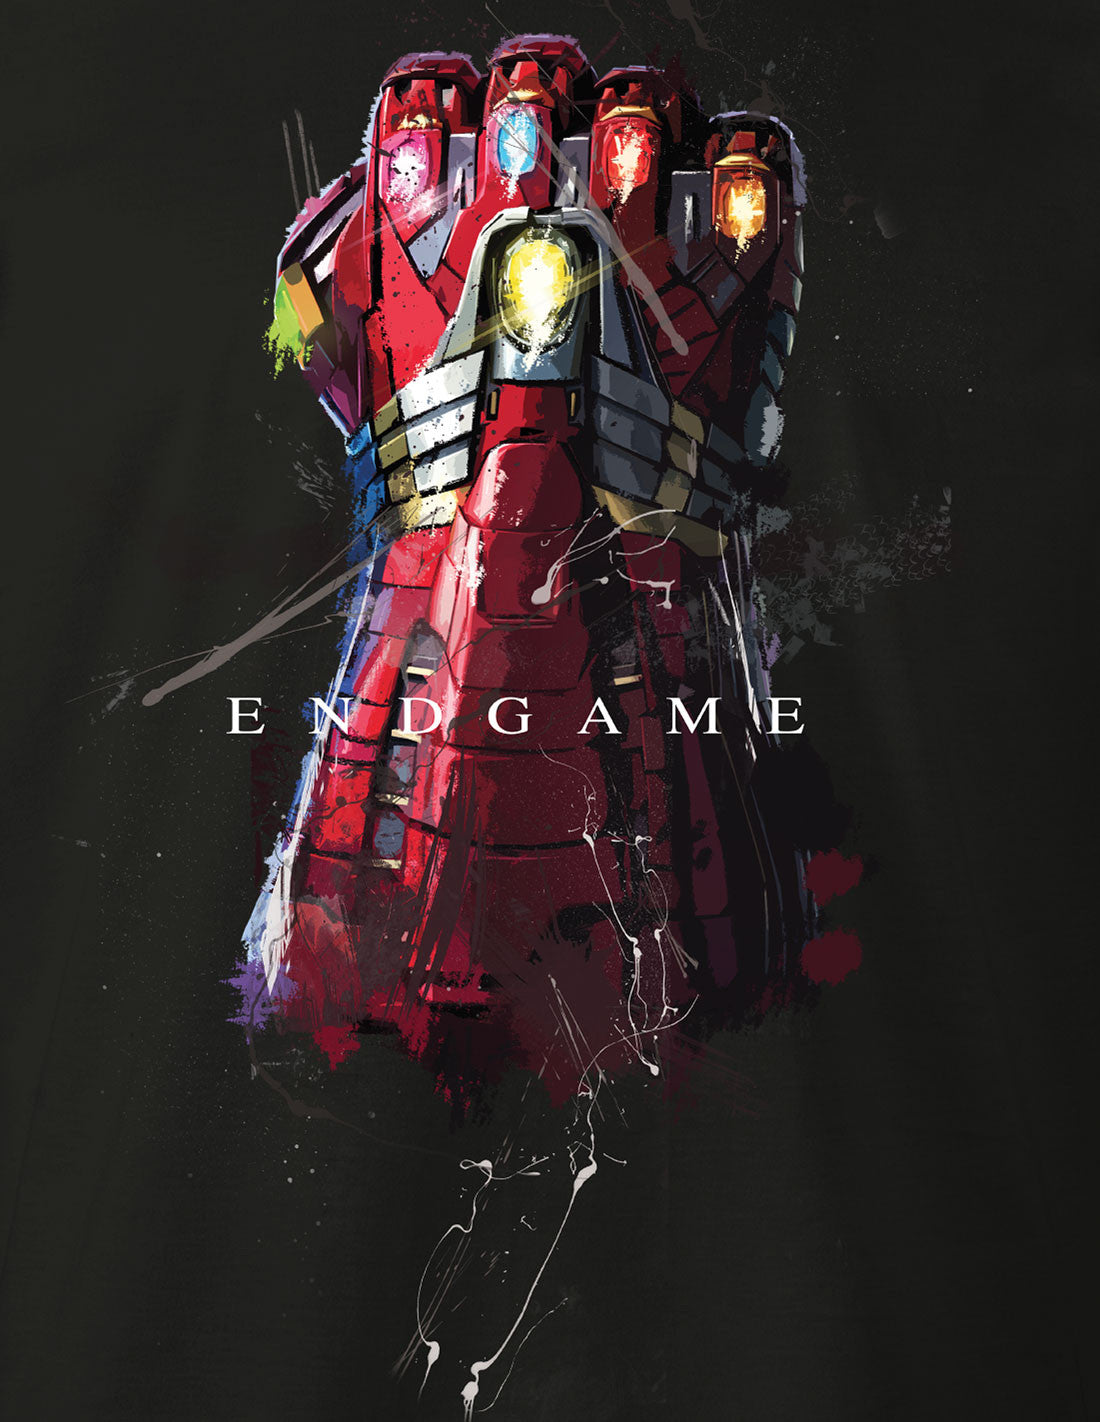 T-shirt Avengers Endgame Marvel - Iron Gauntlet